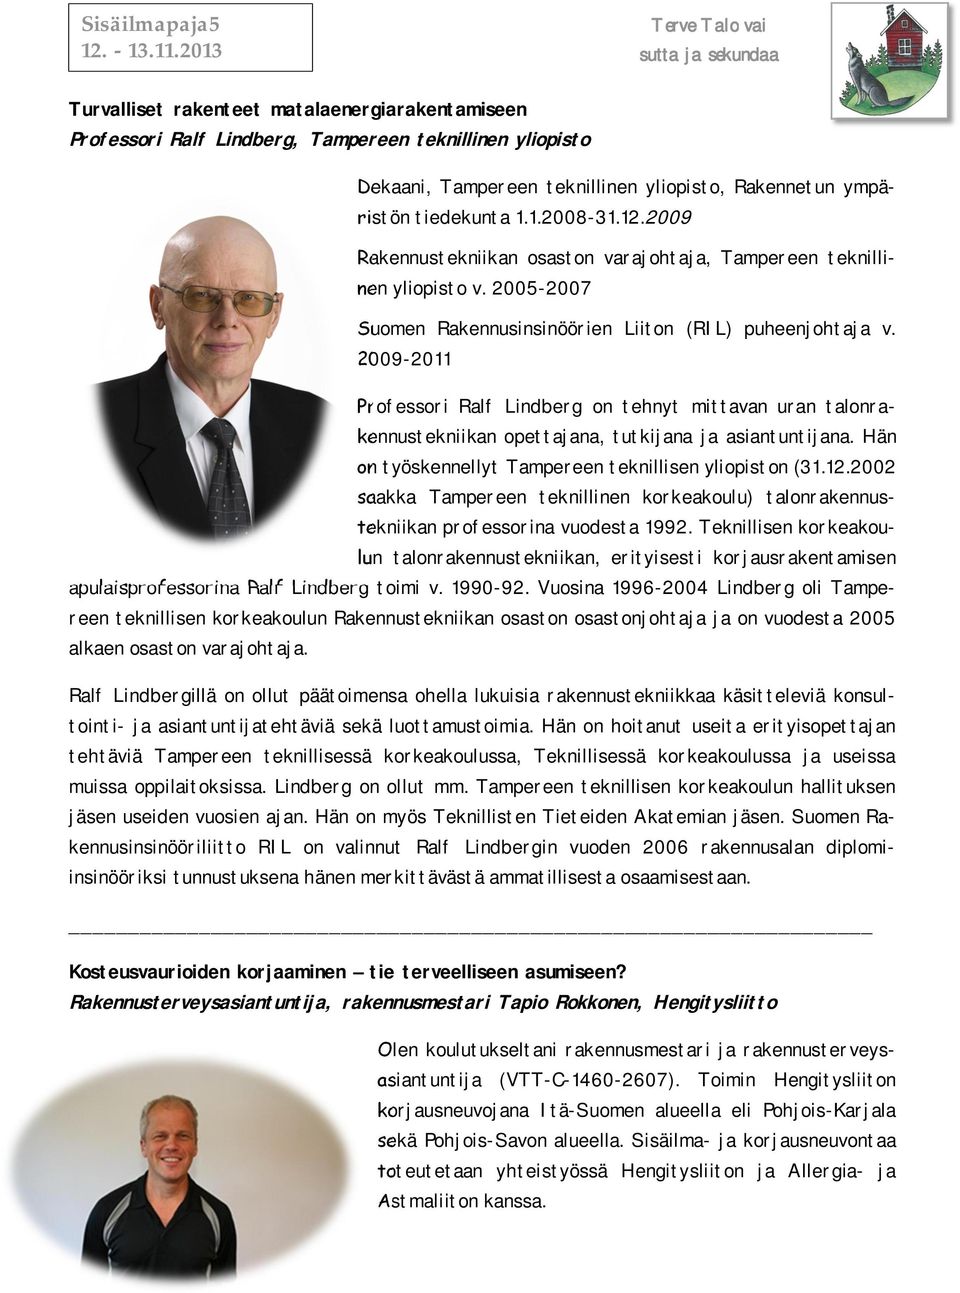 2009-2011 Professori Ralf Lindberg on tehnyt mittavan uran talonrakennustekniikan opettajana, tutkijana ja asiantuntijana. Hän on työskennellyt Tampereen teknillisen yliopiston (31.12.